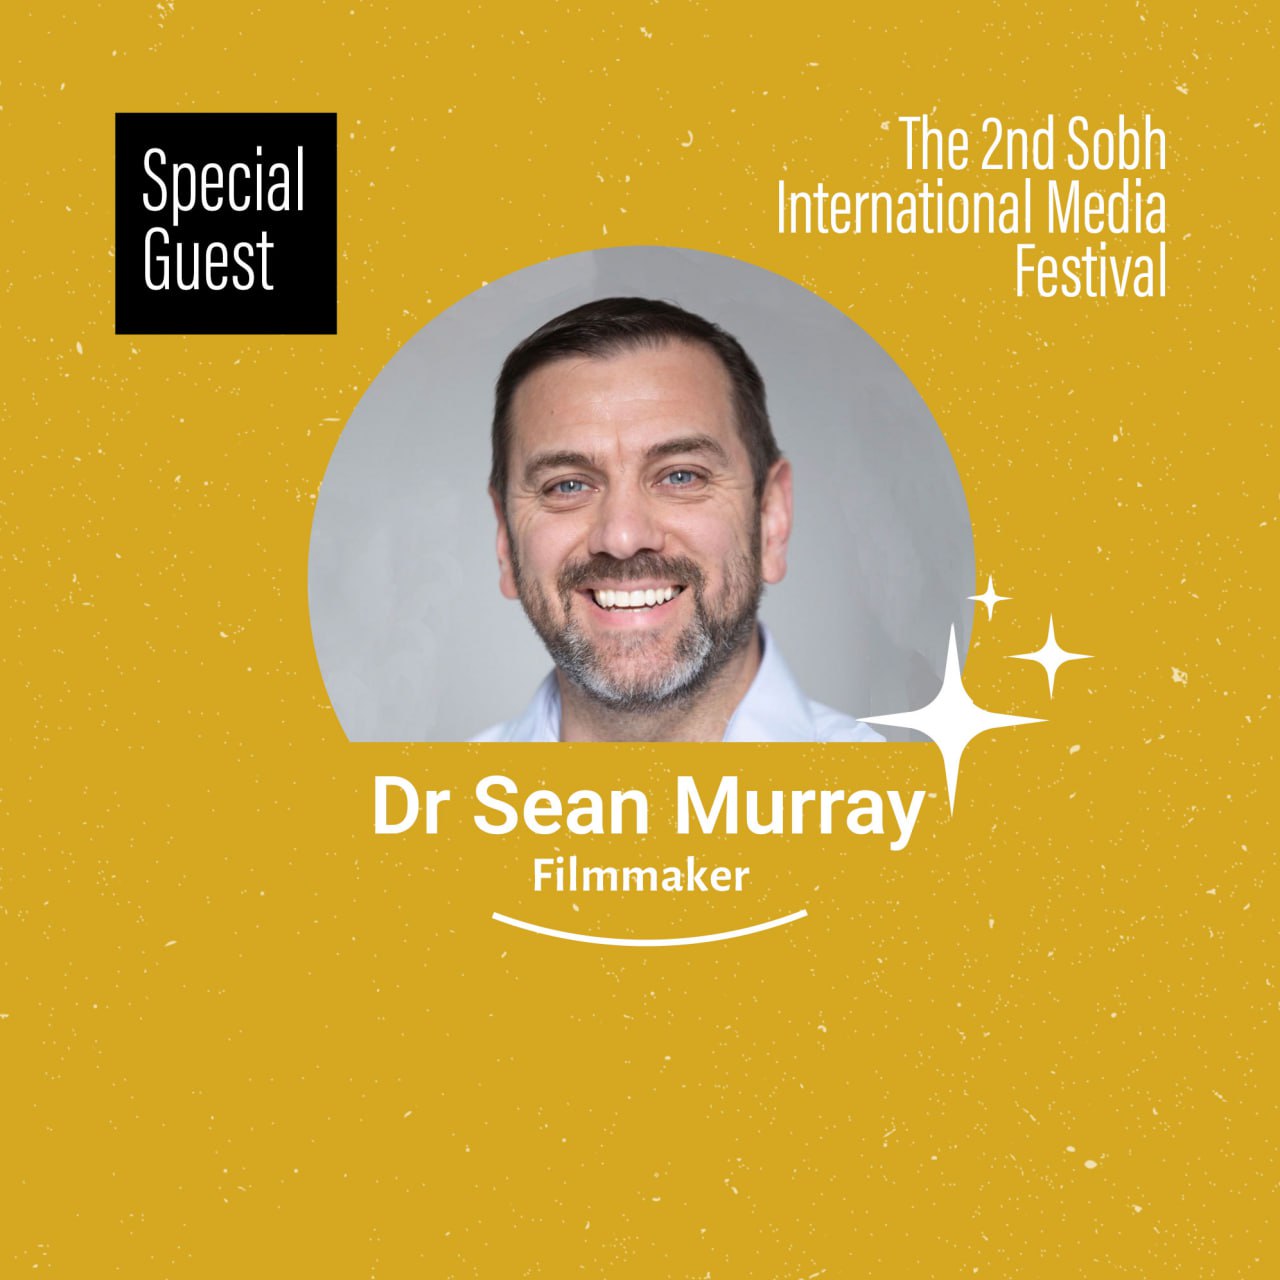 Dr. Sean Murray